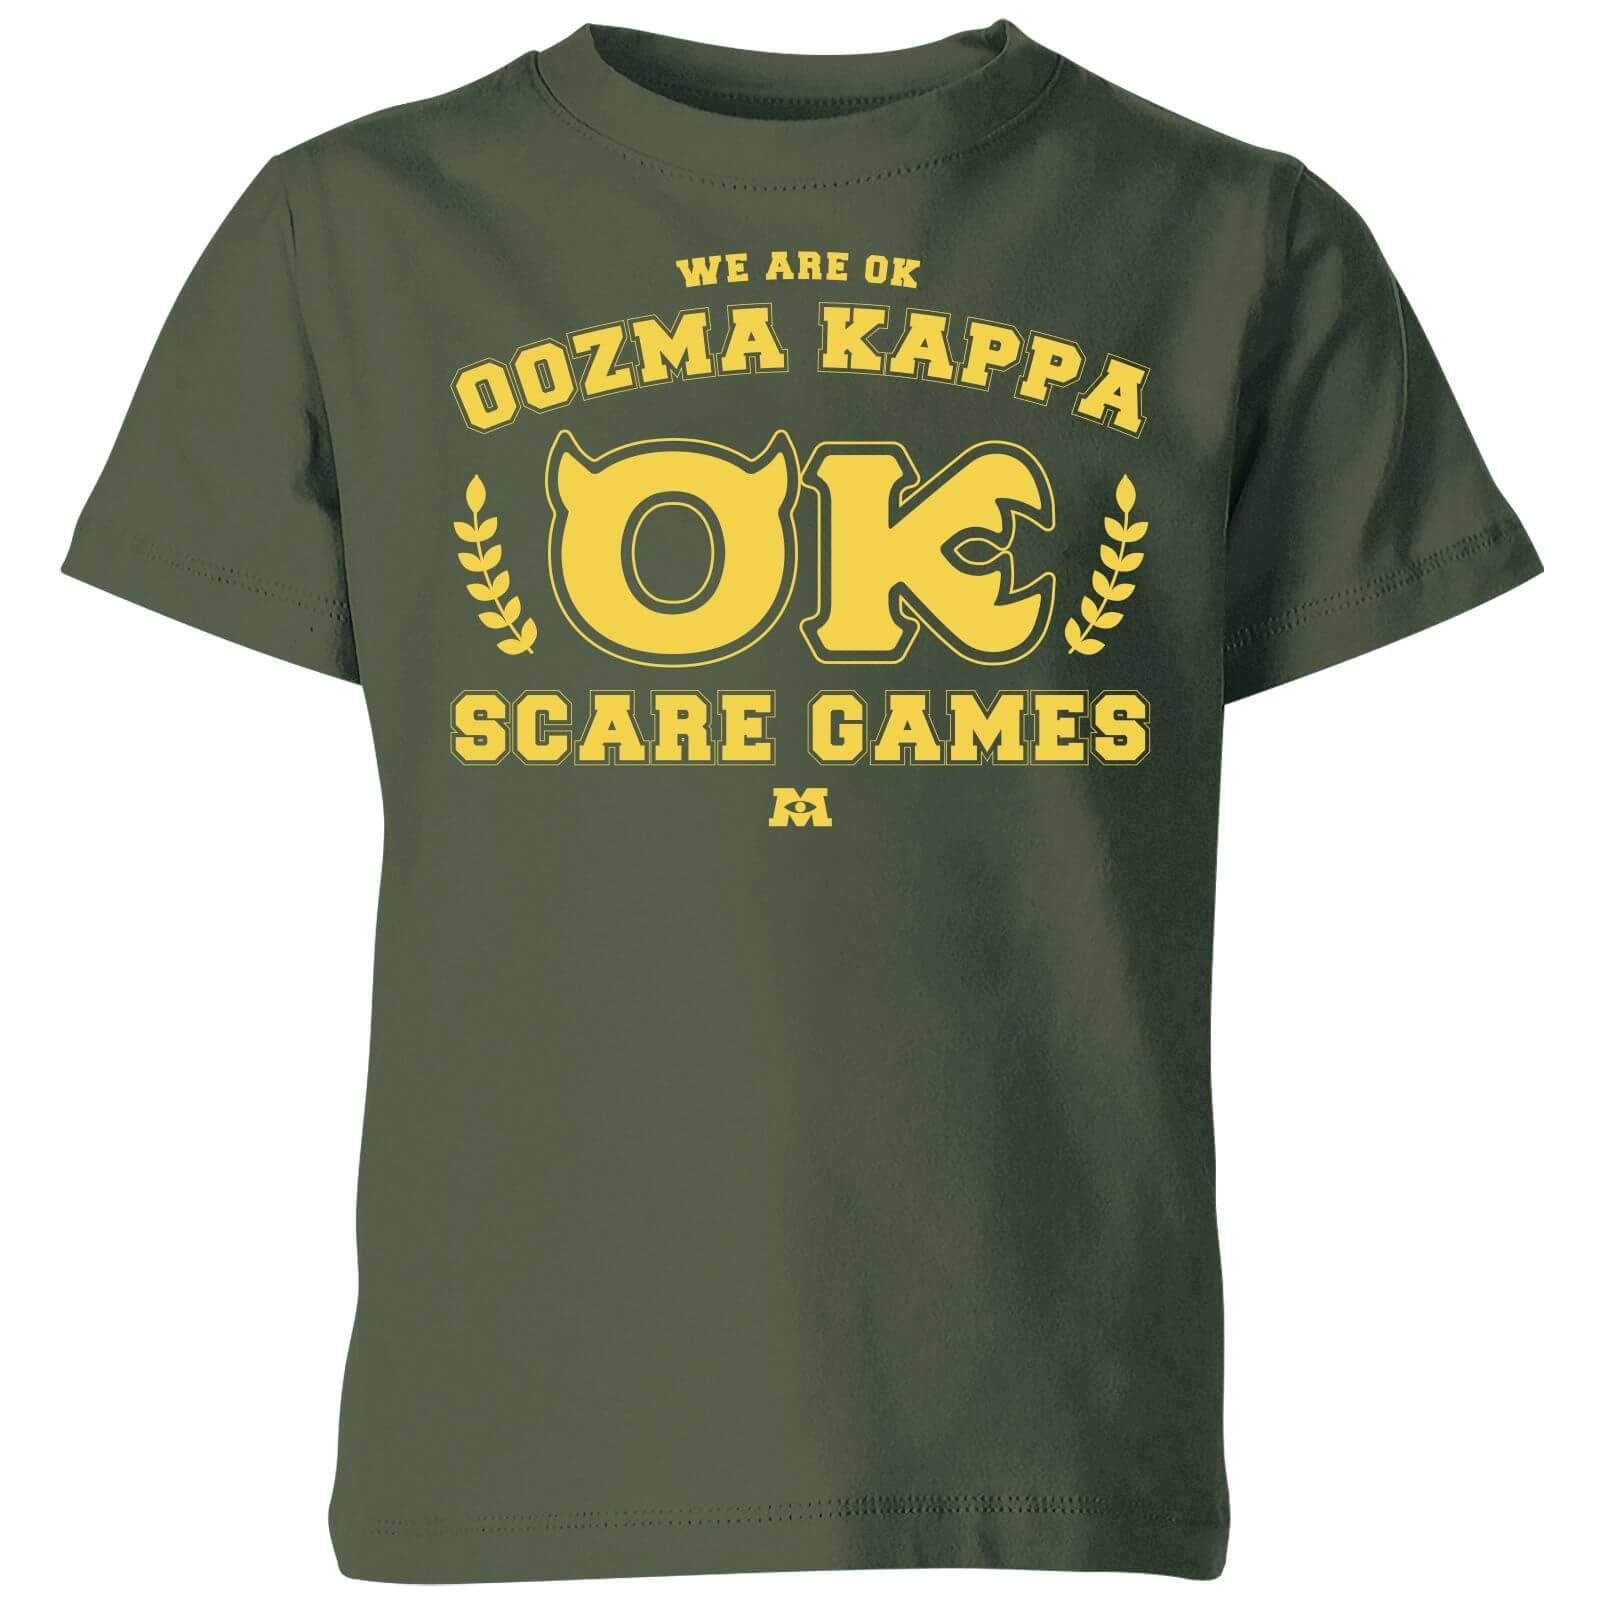 Bild von Monsters Inc. Oozma Kappa Scare Games Kids' T-Shirt - Green - 9-10 Jahre